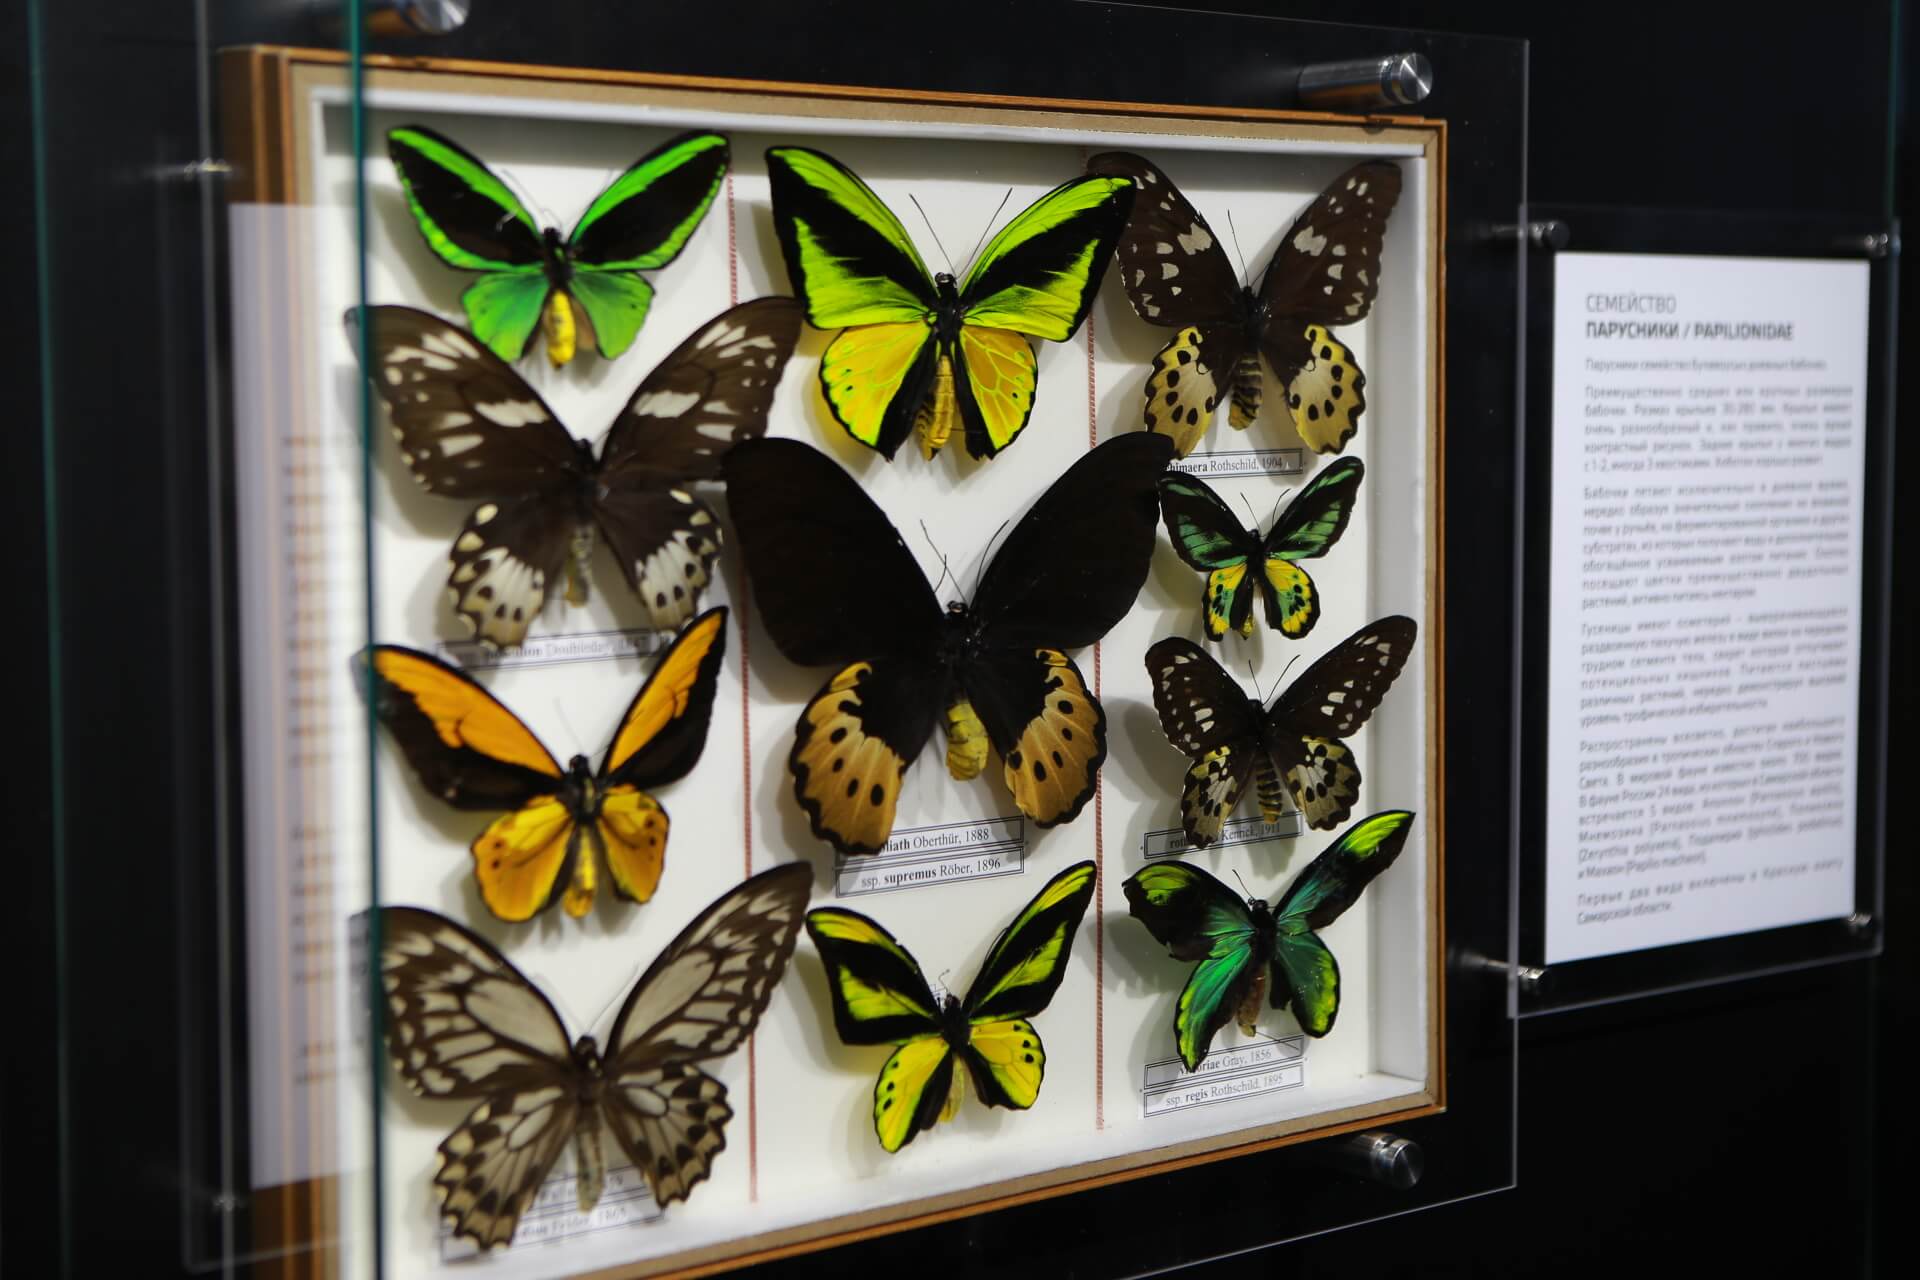 Самарский университет музей бабочек. Дом бабочек. Бабочки Самара. Умный дом бабочек Самара.